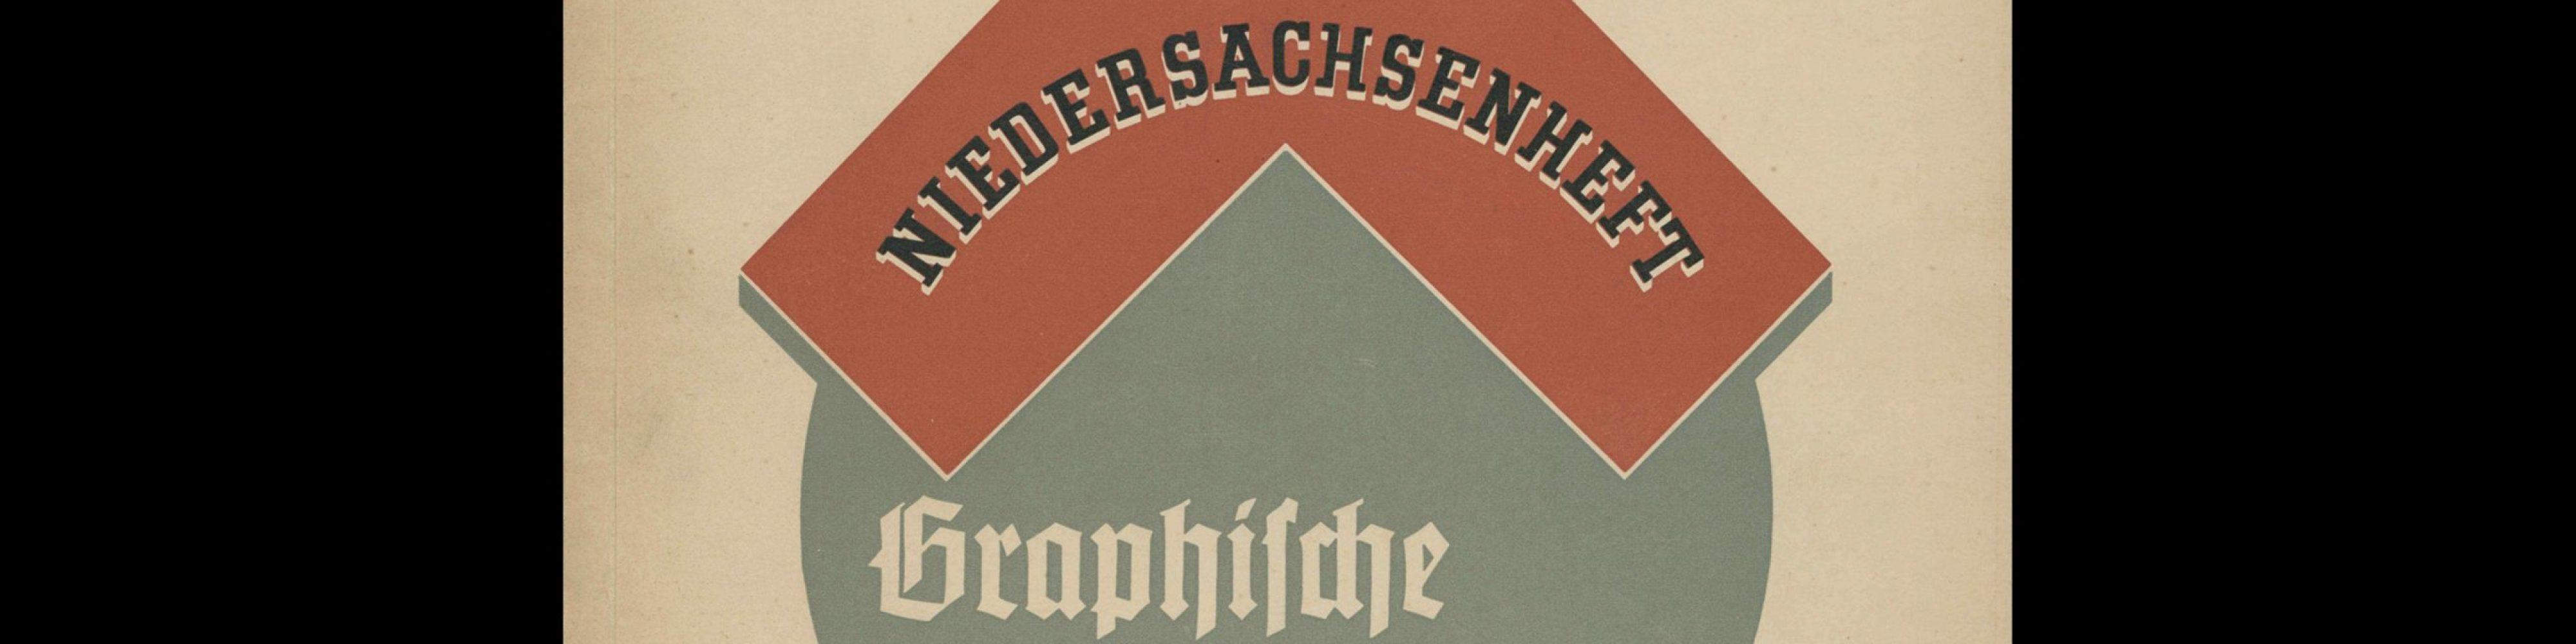 Graphische Nachrichten, Vol 17, November 1938. Paul Krüger (Cover), Walter Hill (Inners)